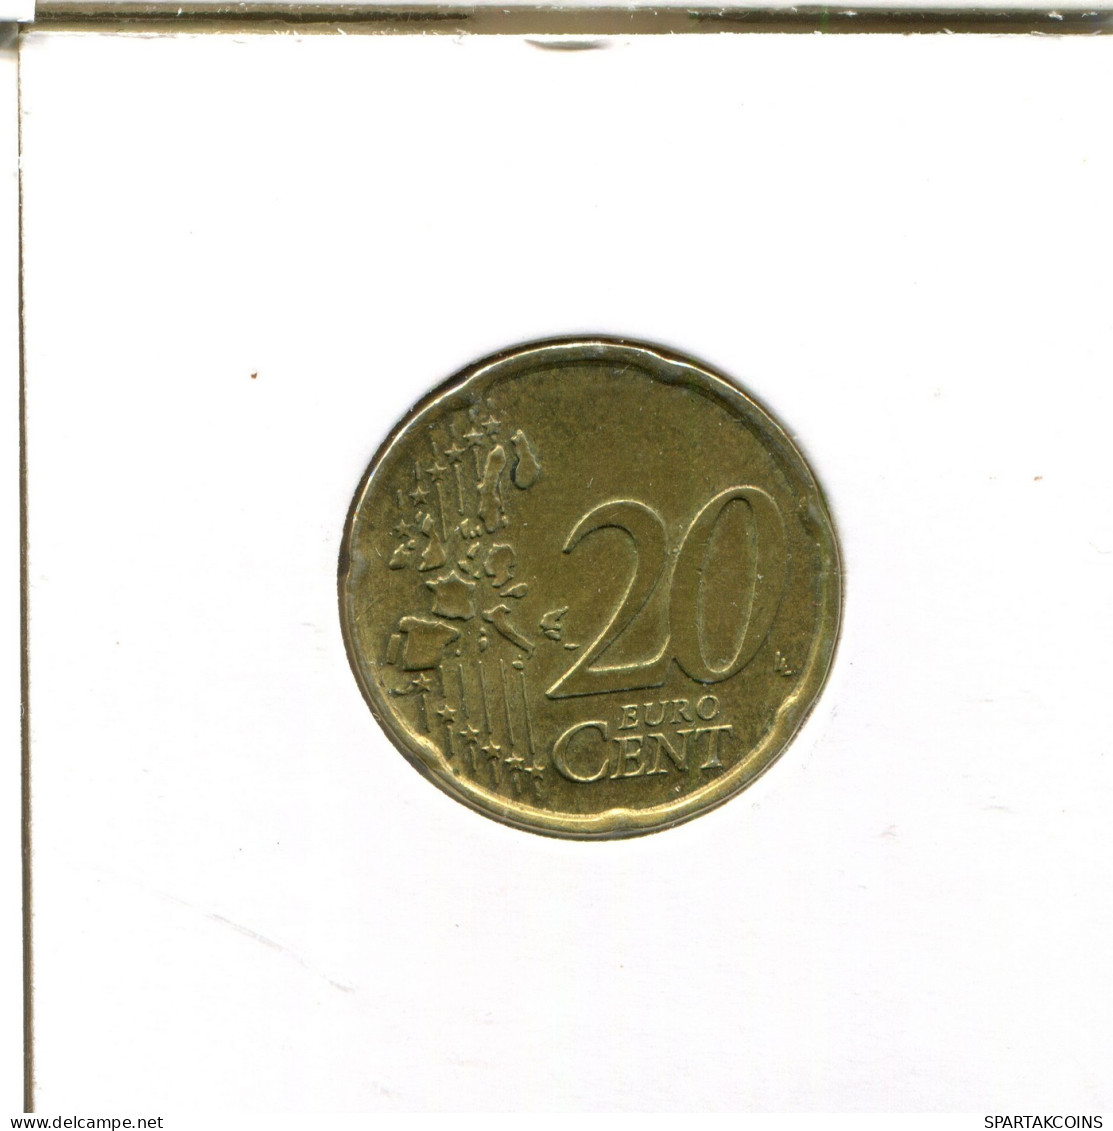 20 EURO CENTS 2003 ITALY Coin #EU237.U.A - Italy